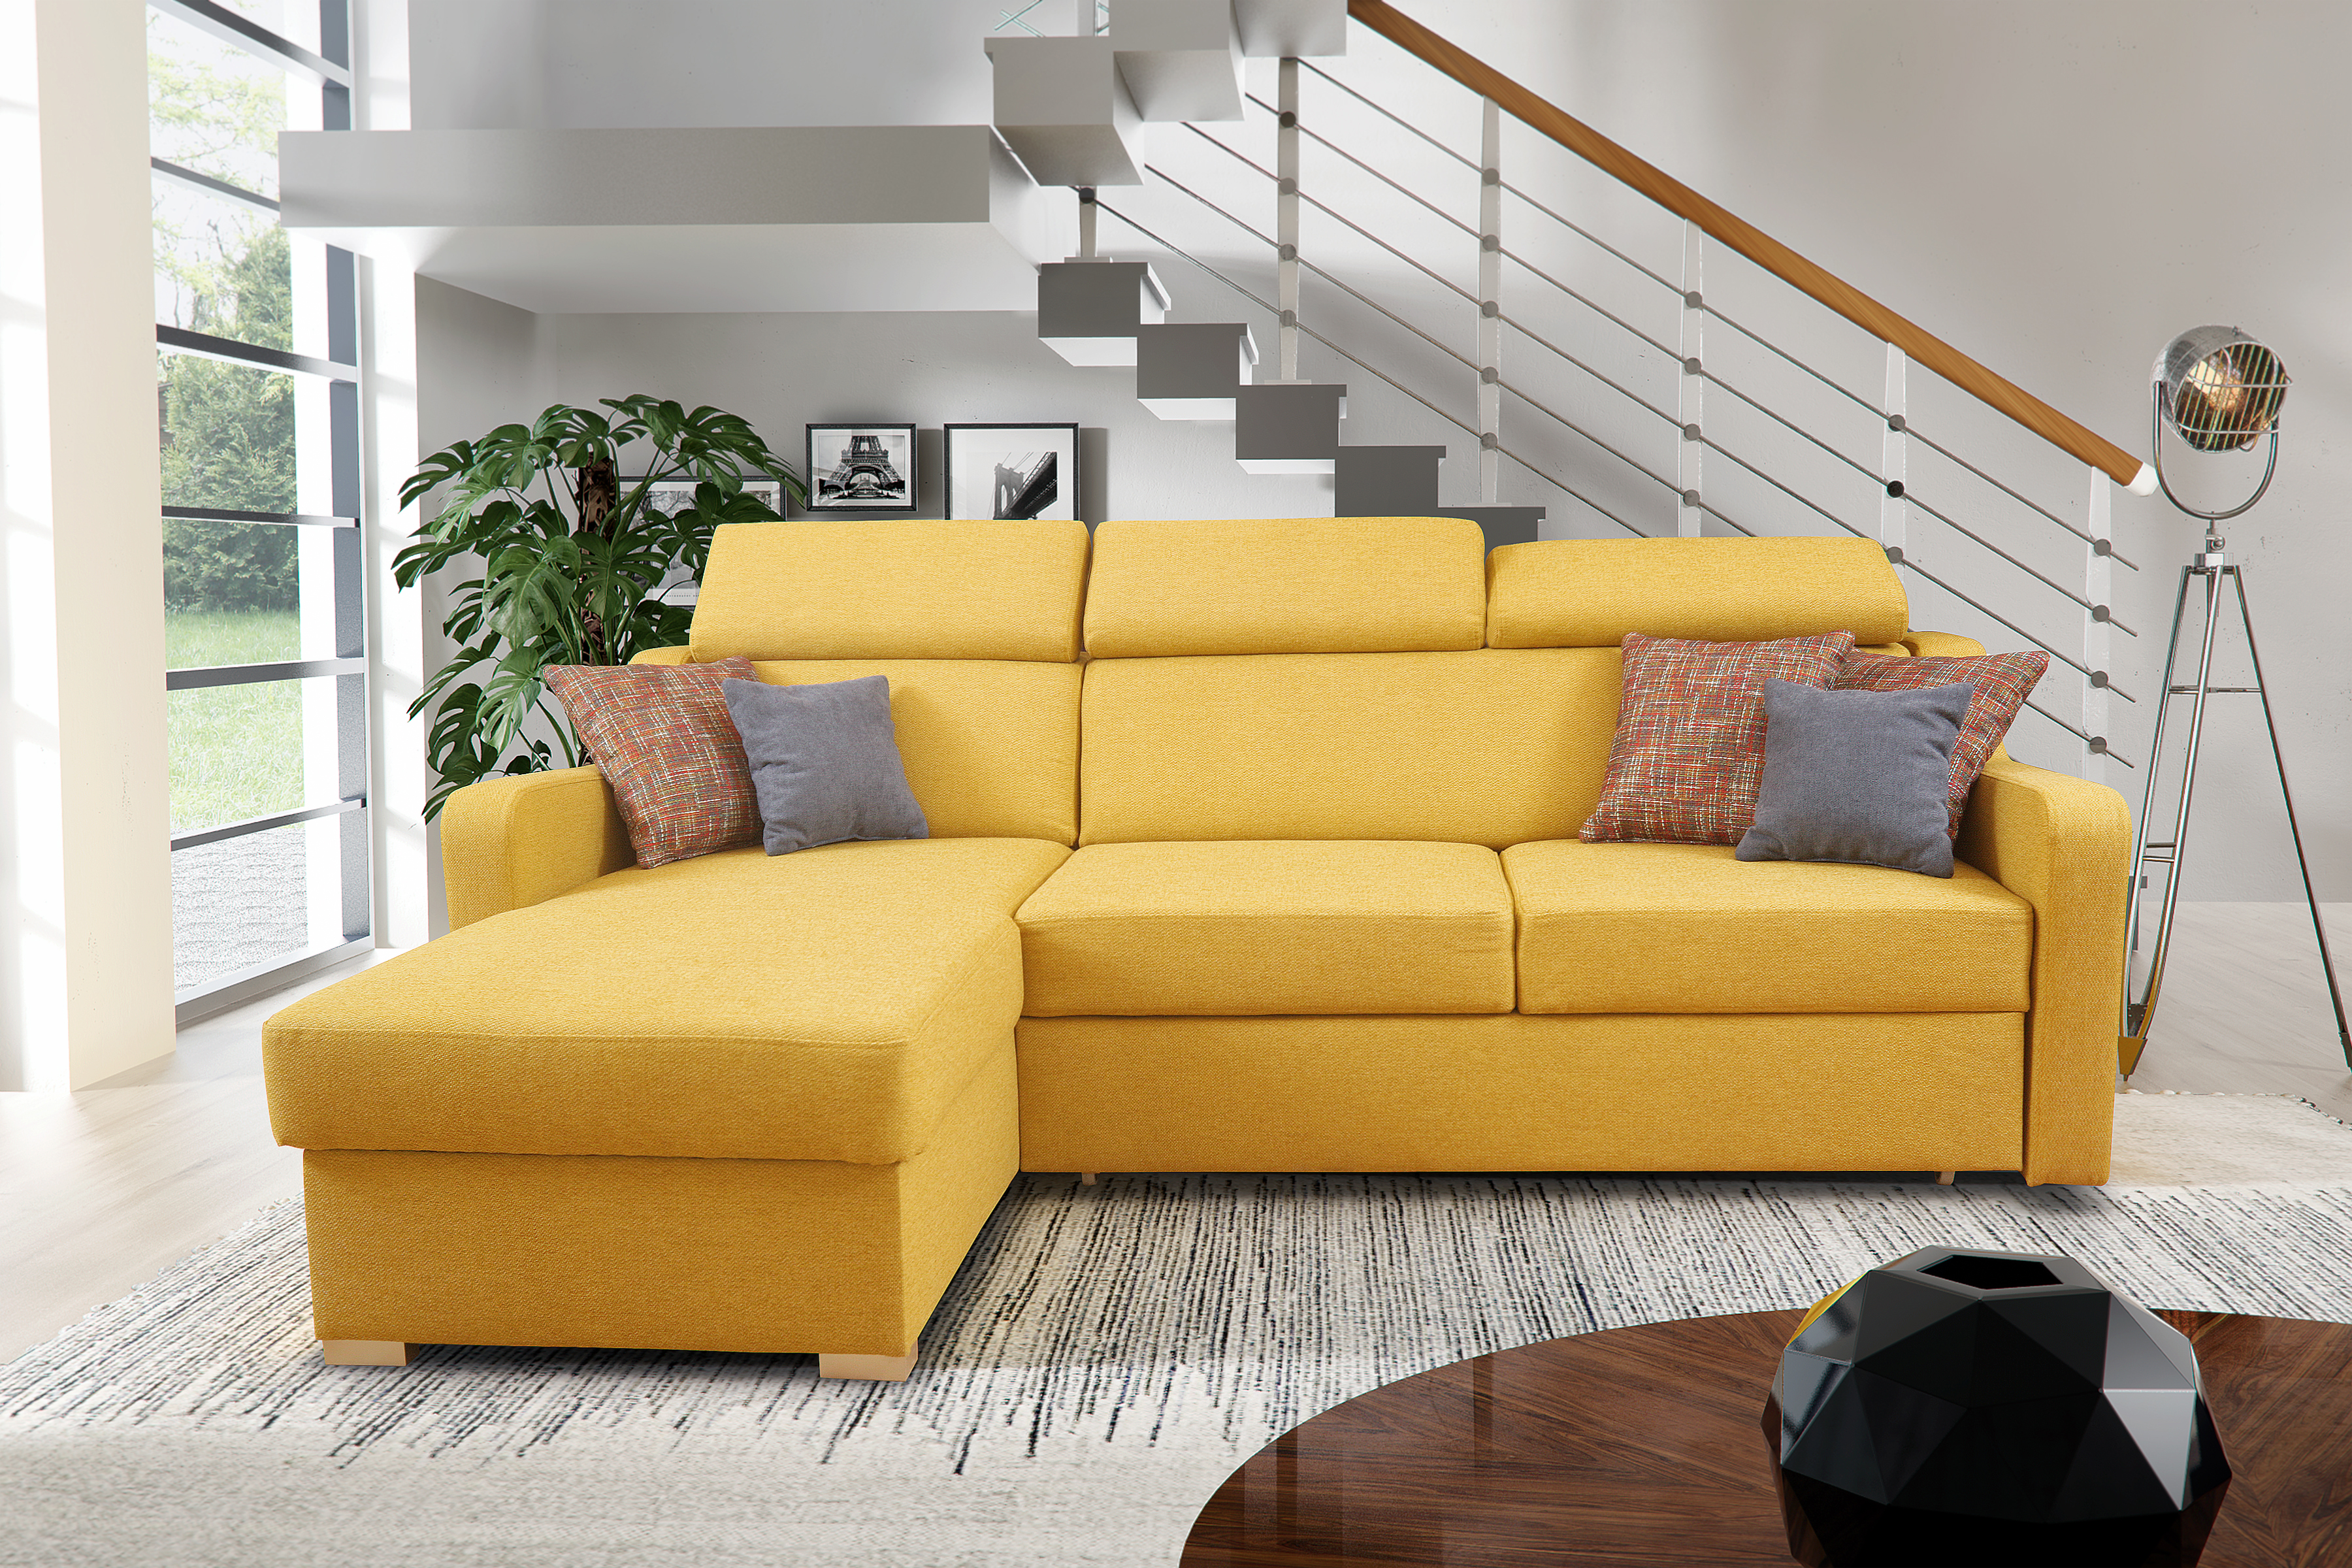 Цена хорошего дивана. Диван. Мягкий угловой диван в гостиную. Желтый диван в интерьере. Диван угловой раскладной.